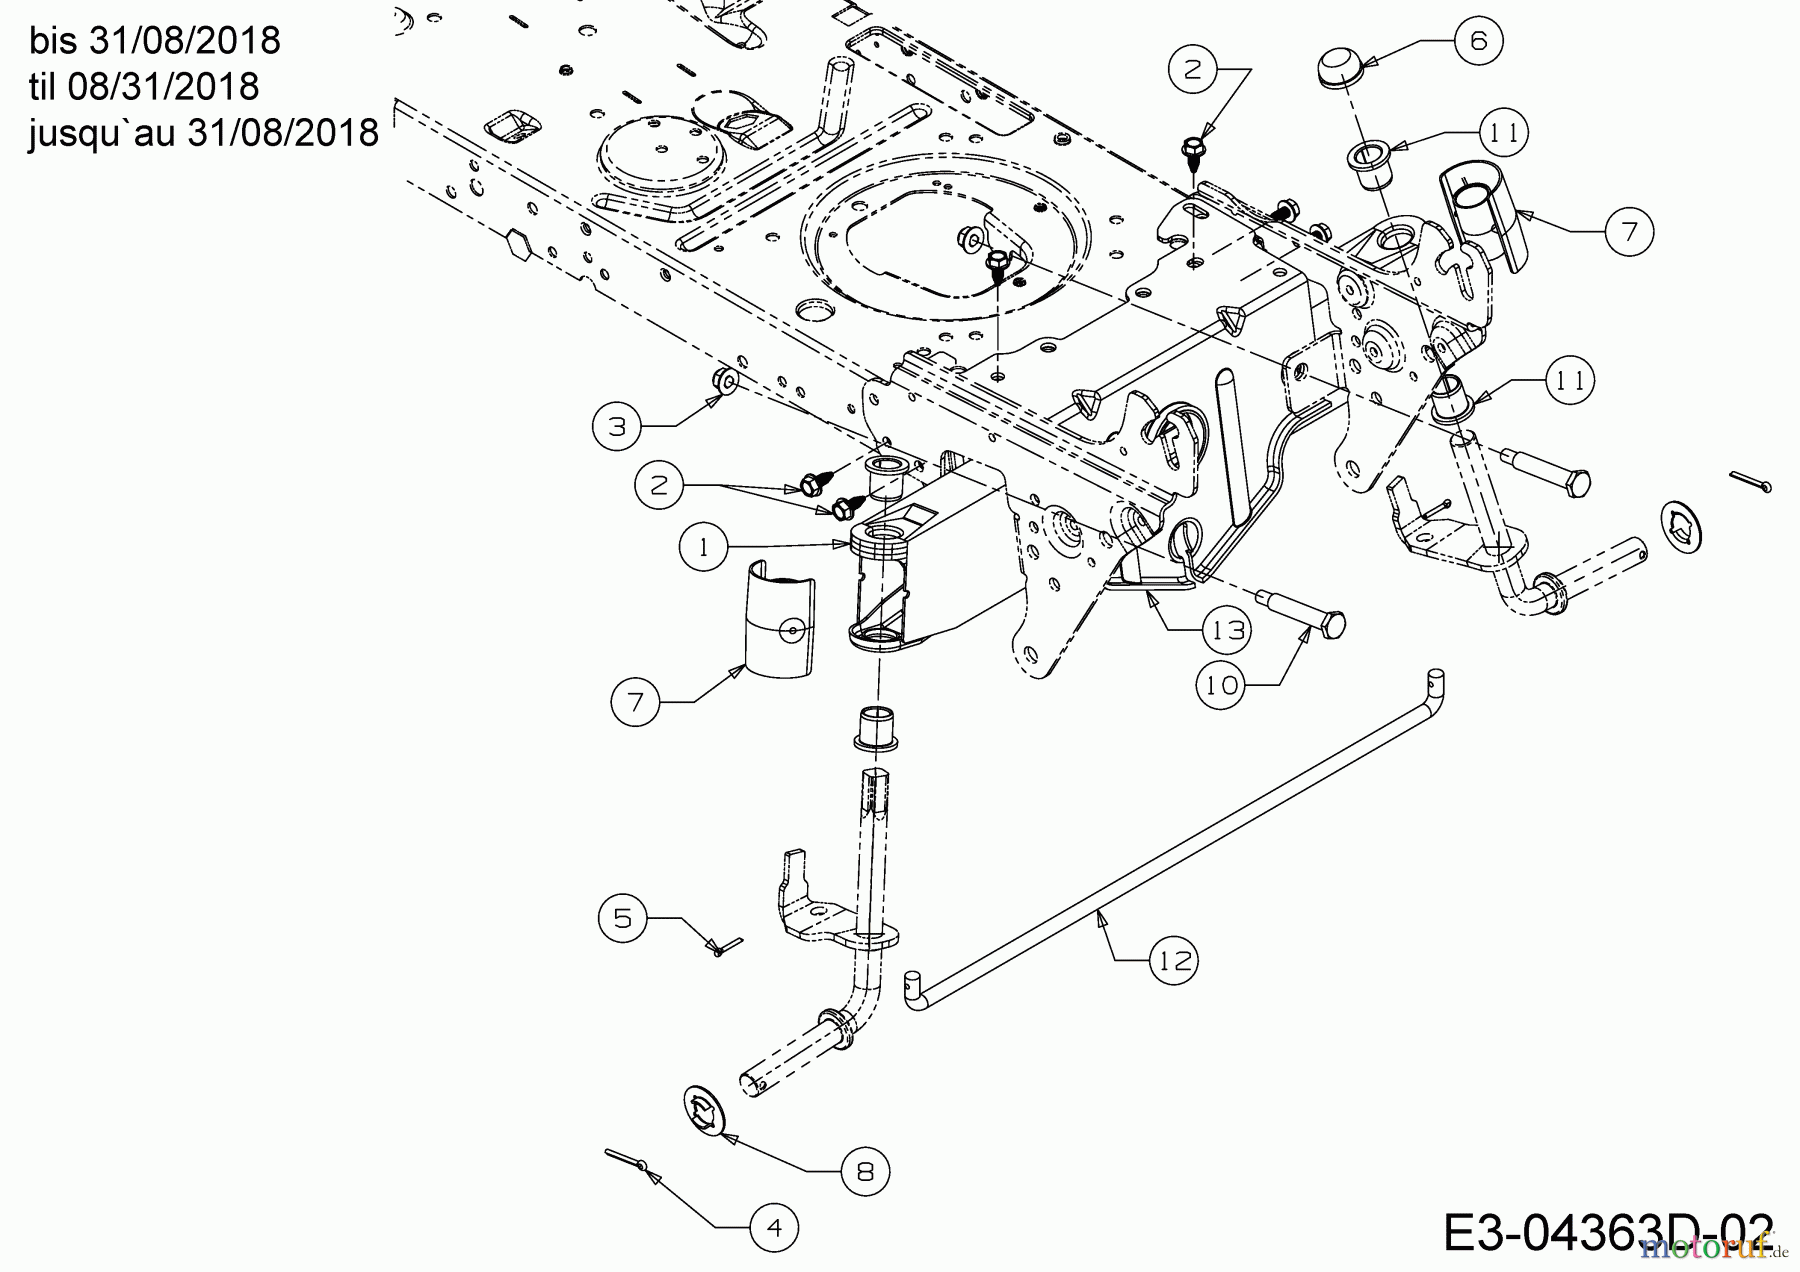  Helington Rasentraktoren H 96 T 13H276KF686  (2018) Vorderachse bis 31/08/2018